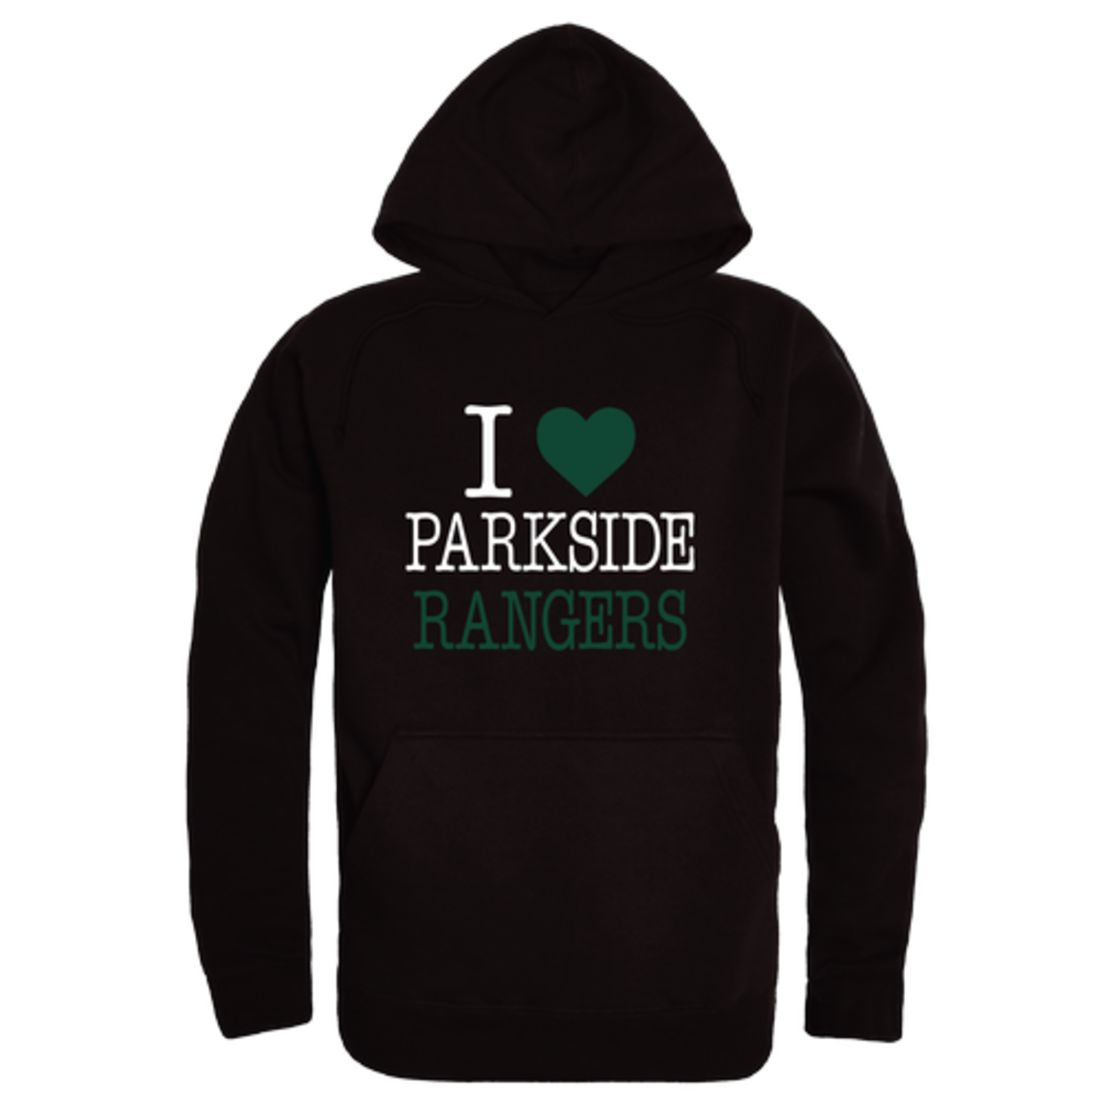 I-Love-University-of-Wisconsin-Parkside-Rangers-Fleece-Hoodie-Sweatshirts